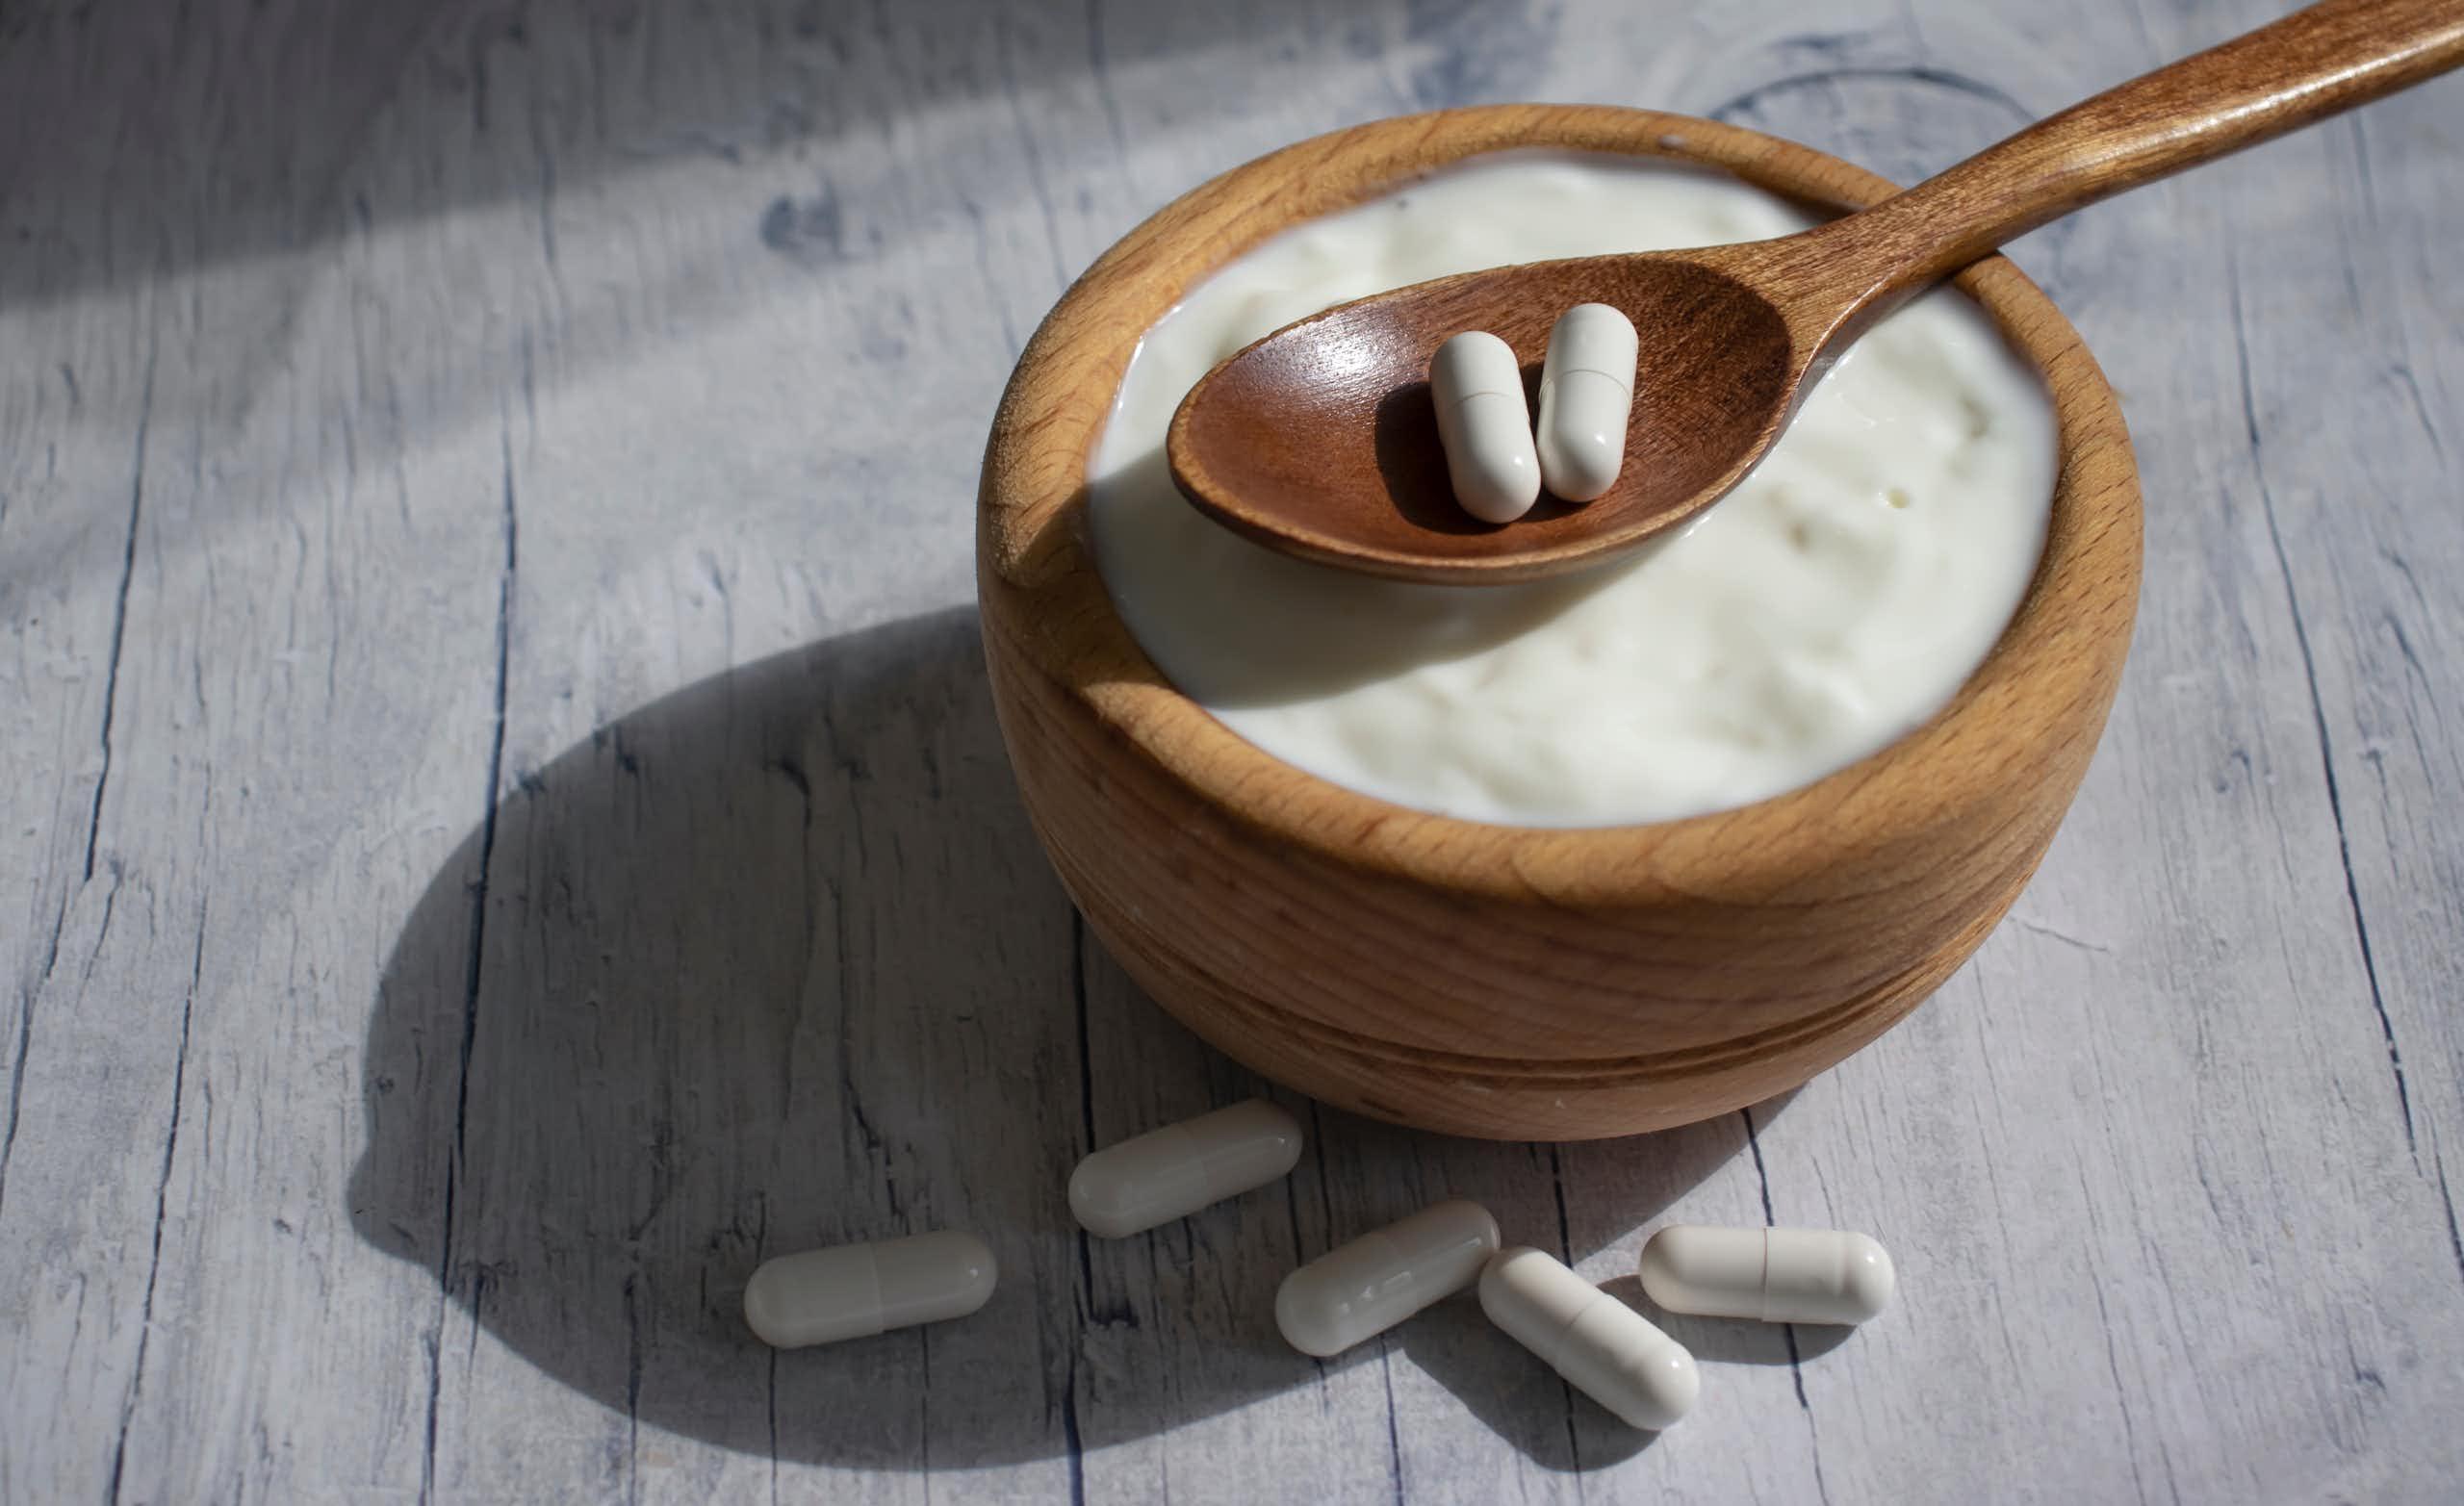 Probióticos, yogures, alimentos fermentados… ¿nos pueden ayudar cuando tomamos antibióticos?